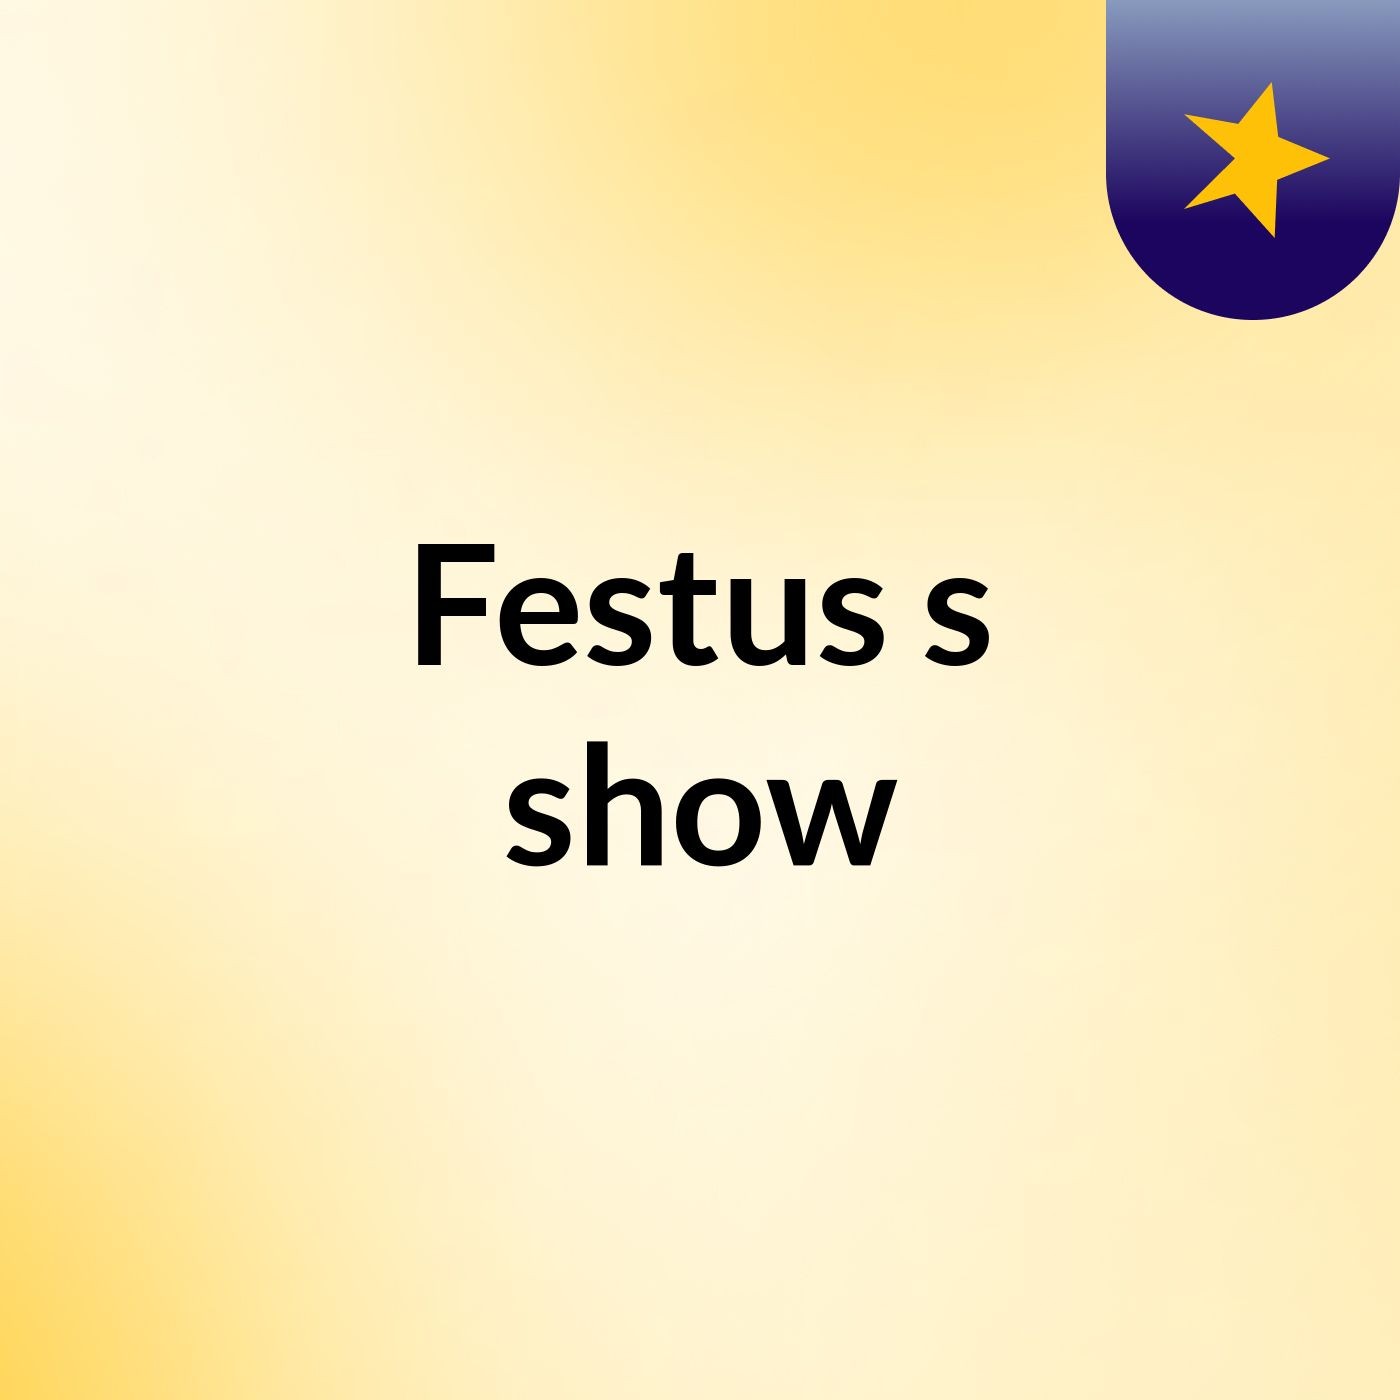 Episode 3 - Festus's show